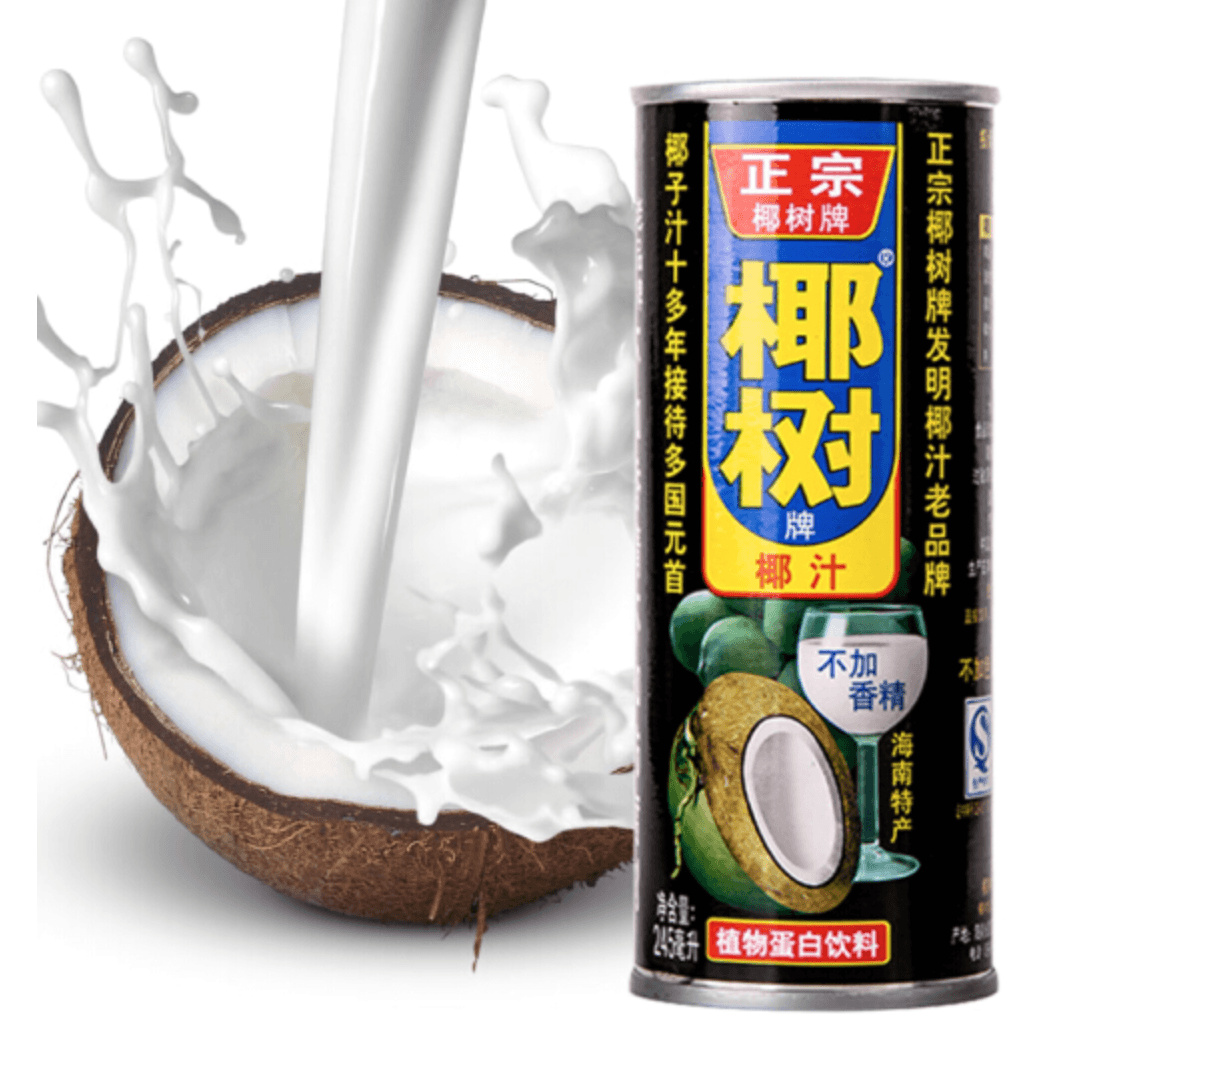 正宗椰树牌椰子汁椰果椰汁24罐果肉椰汁椰奶植物蛋白饮料250g整箱-淘宝网